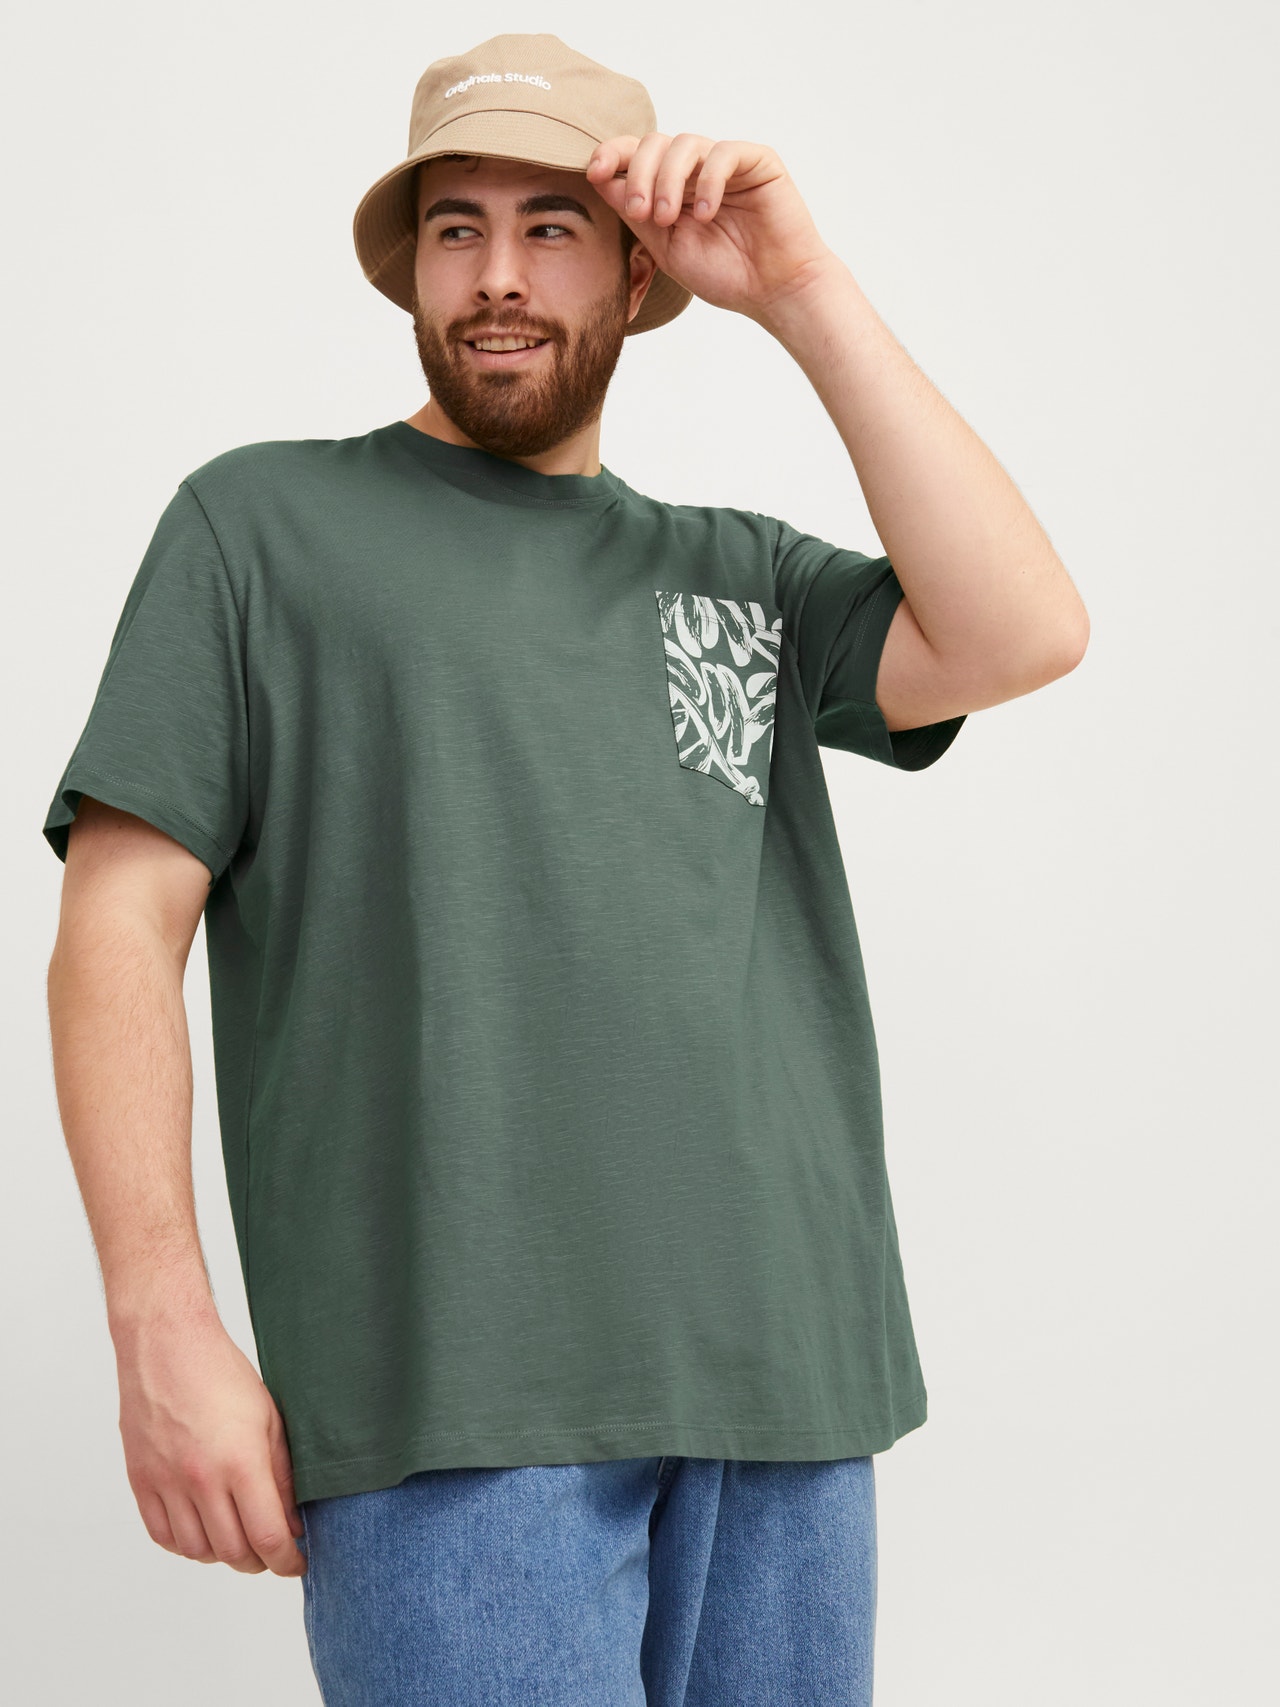 Jack & Jones Plus Size T-shirt Estampar -Laurel Wreath - 12257516